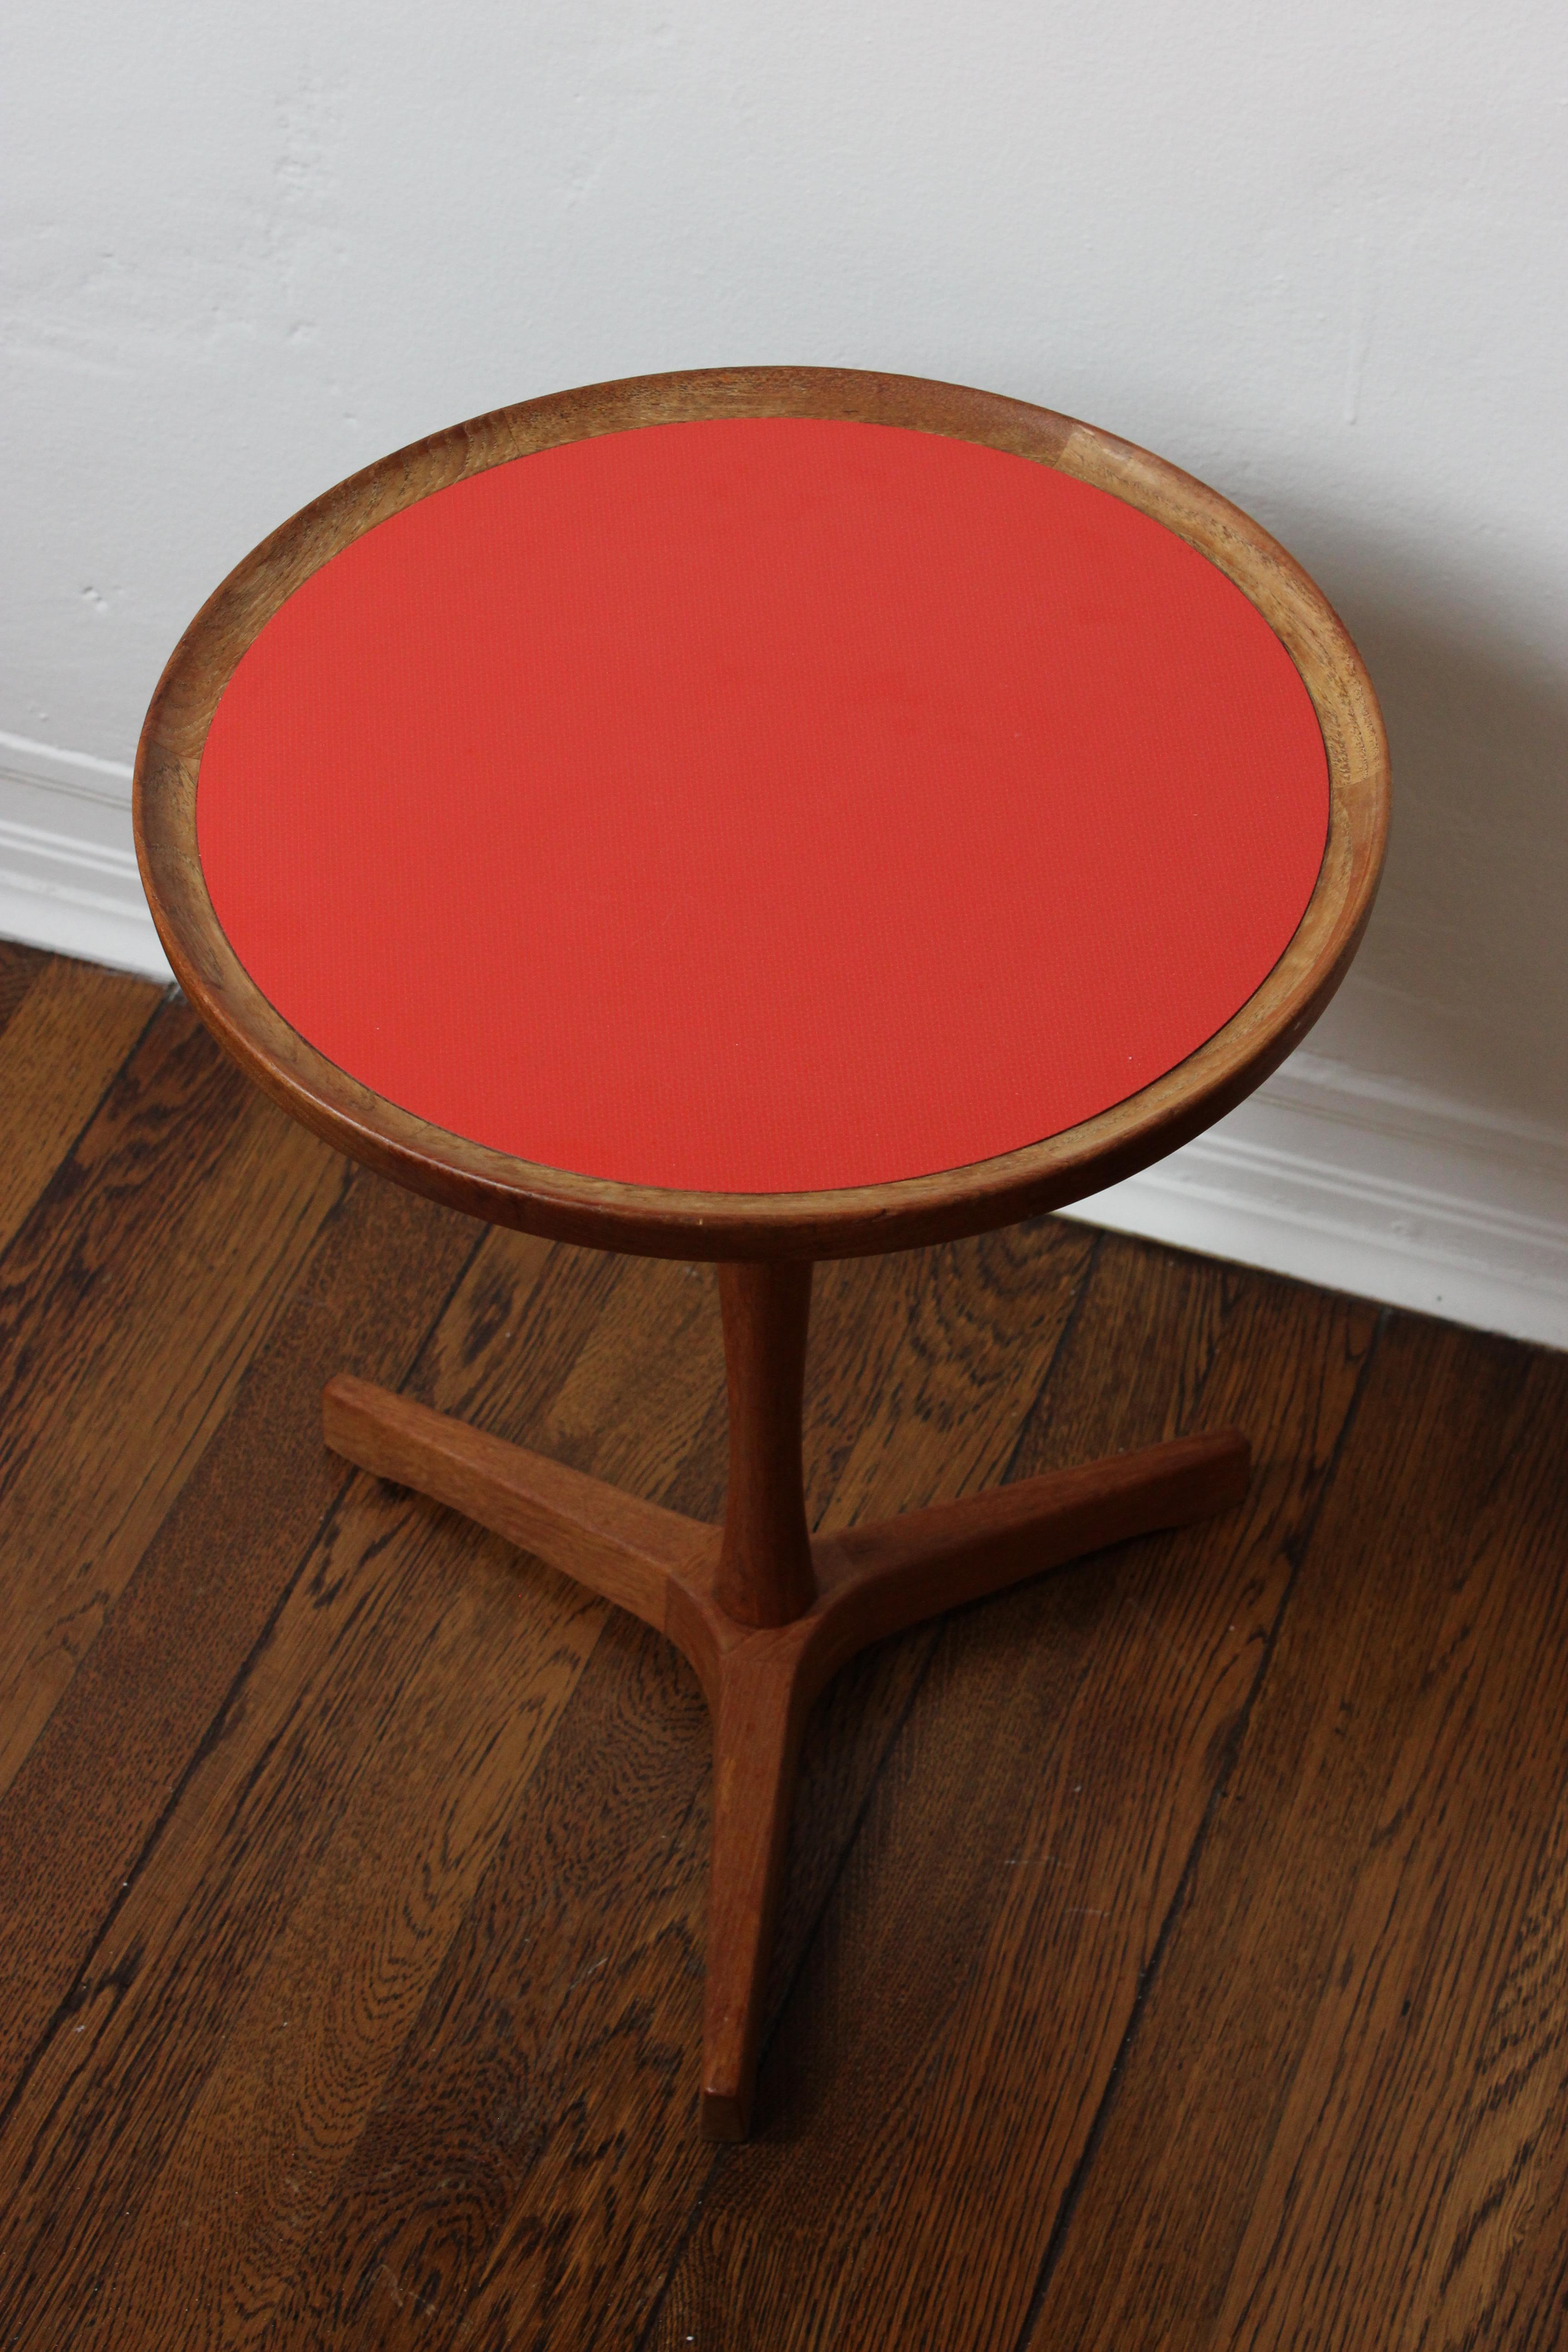 Une table d'appoint très rare de Hans C. Andersen pour Artex. Le plateau en formica orange n'est pas présent sur de nombreuses de ces tables et reste la version la plus difficile à trouver. 

Danemark, années 1960 
Teck.

2x disponibles.